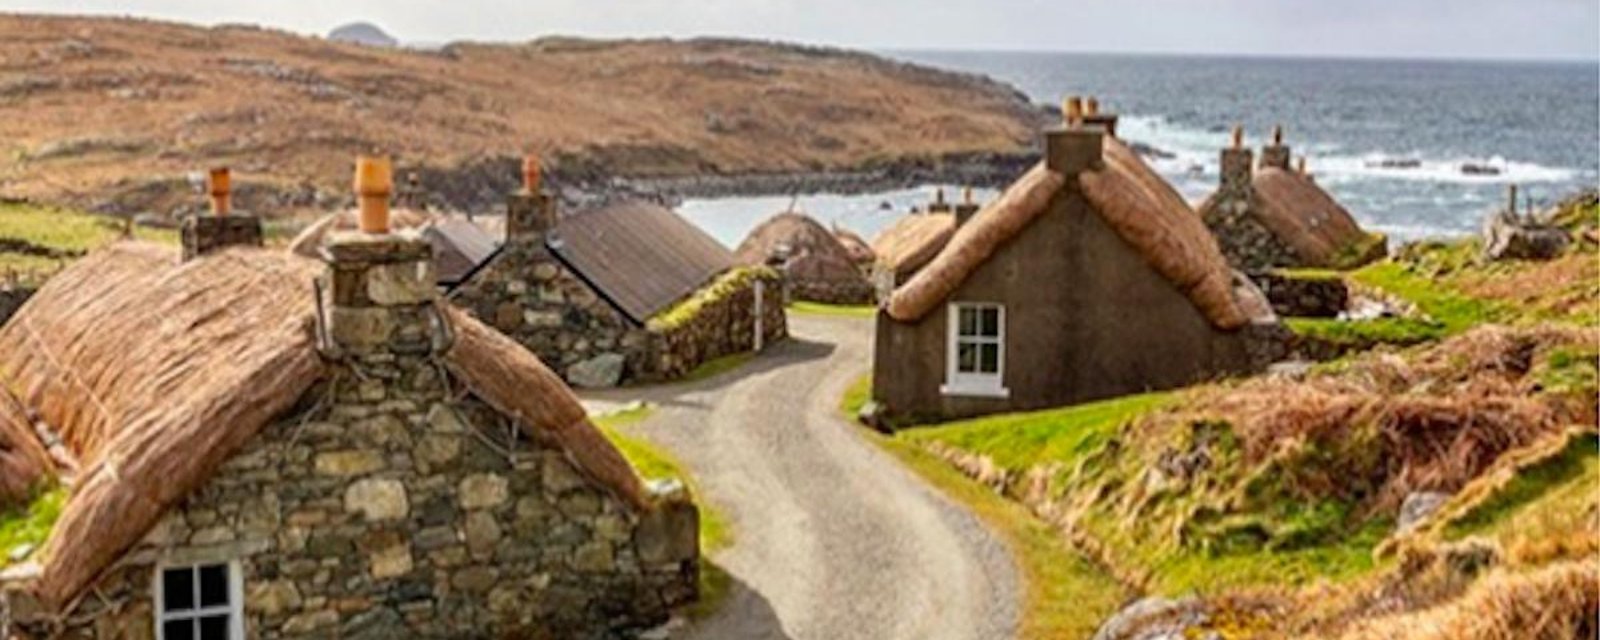 Un village écossais abandonné reconverti en un lieu d'hébergement pour touristes aventuriers